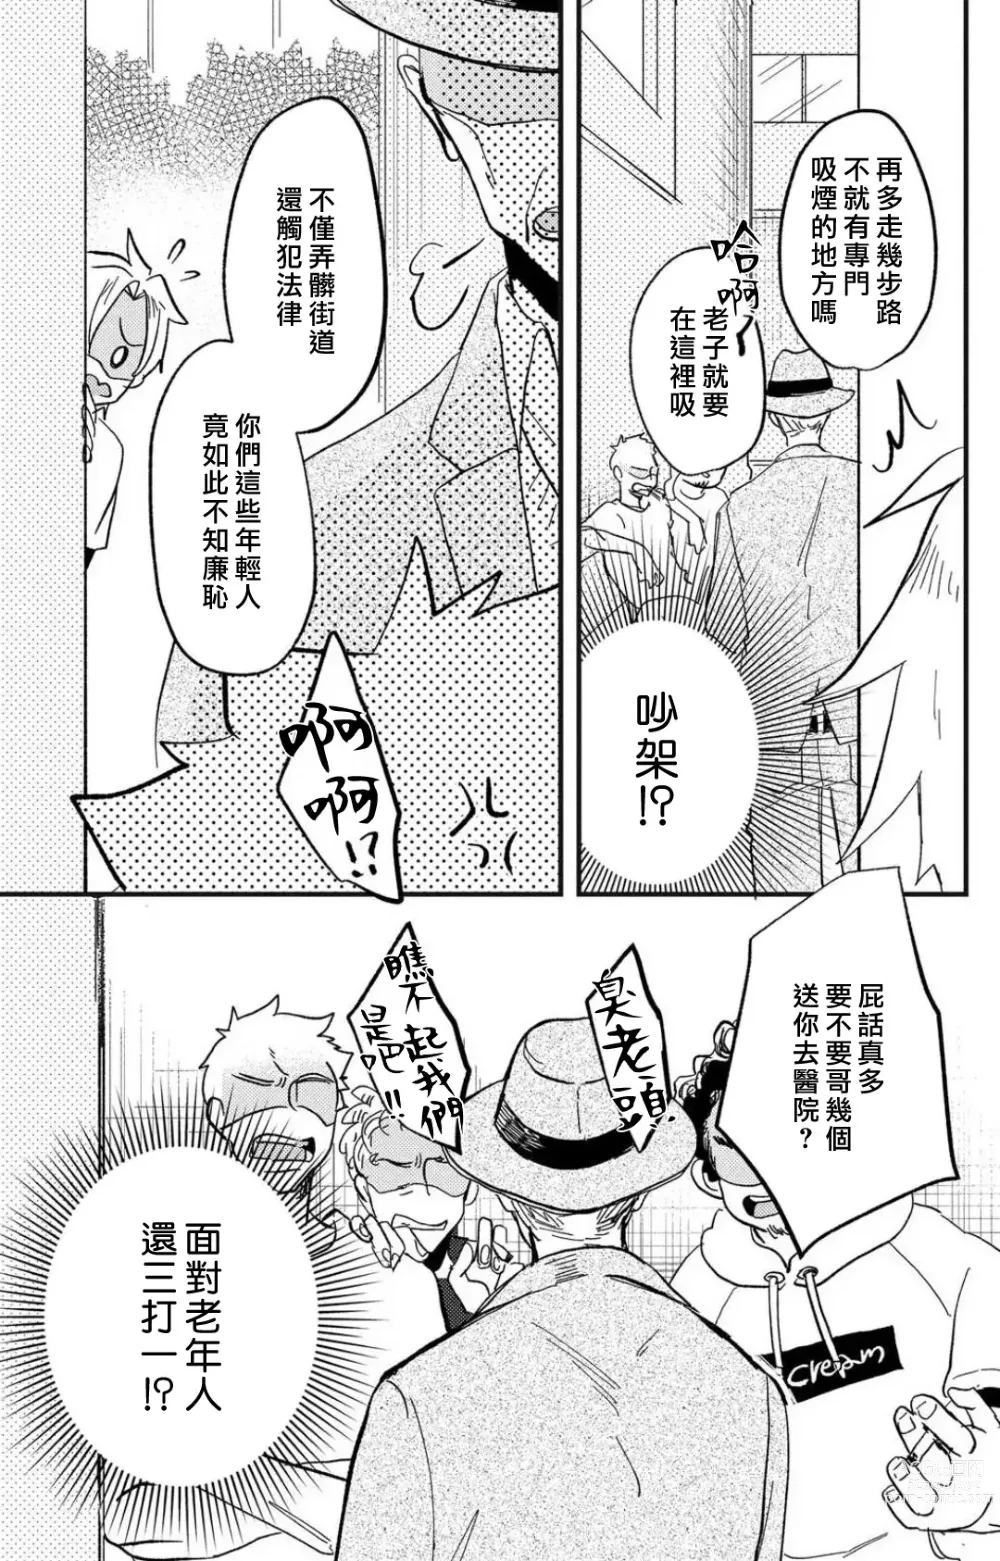 Page 184 of manga 败在他的眼泪攻势下 奈奈大小姐想被哭唧唧的男子推倒！ 1-5